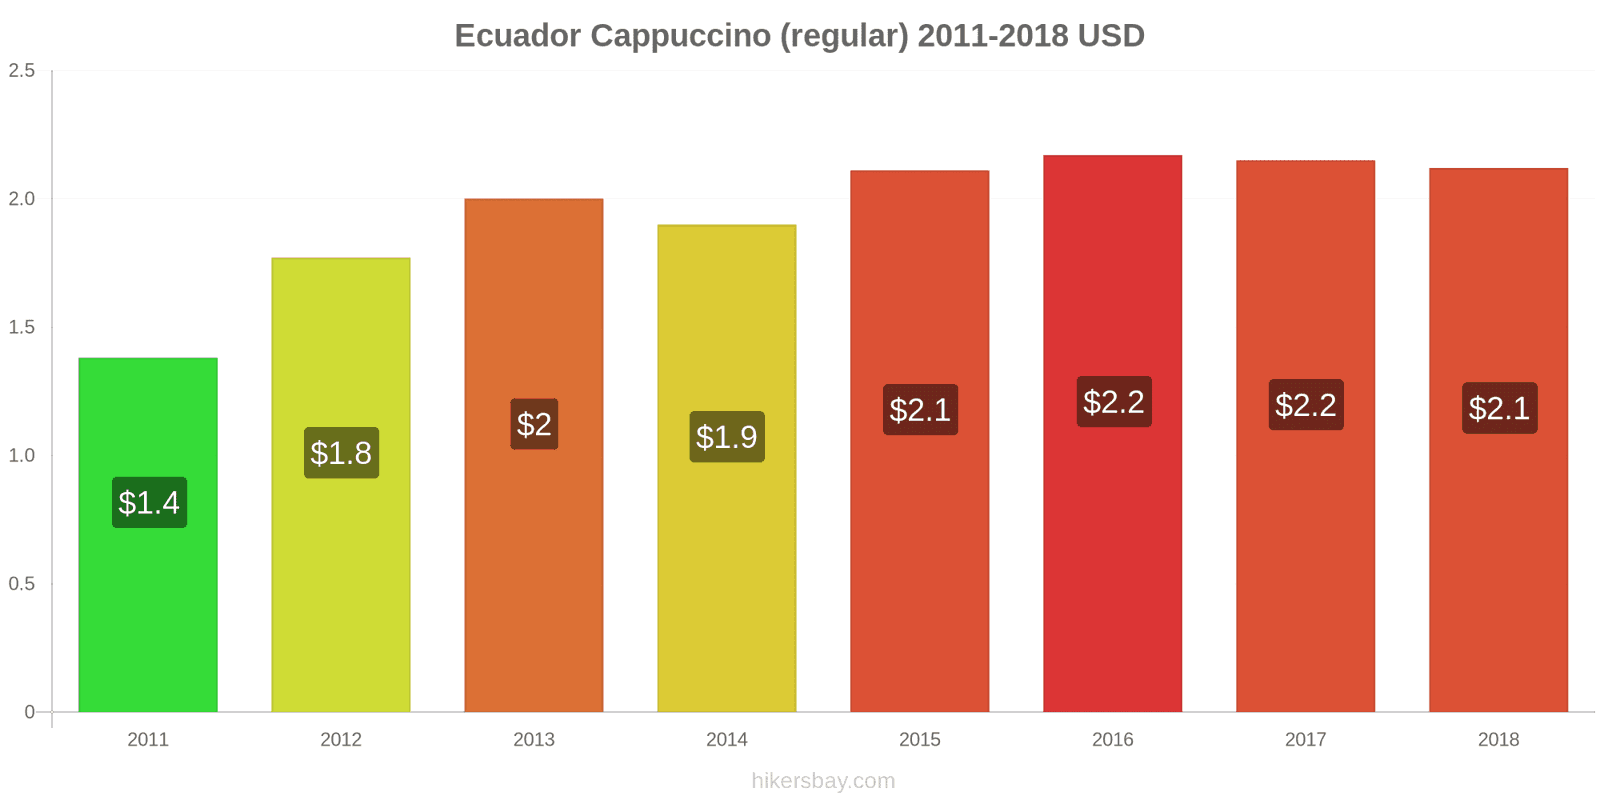 Ecuador price changes Cappuccino hikersbay.com